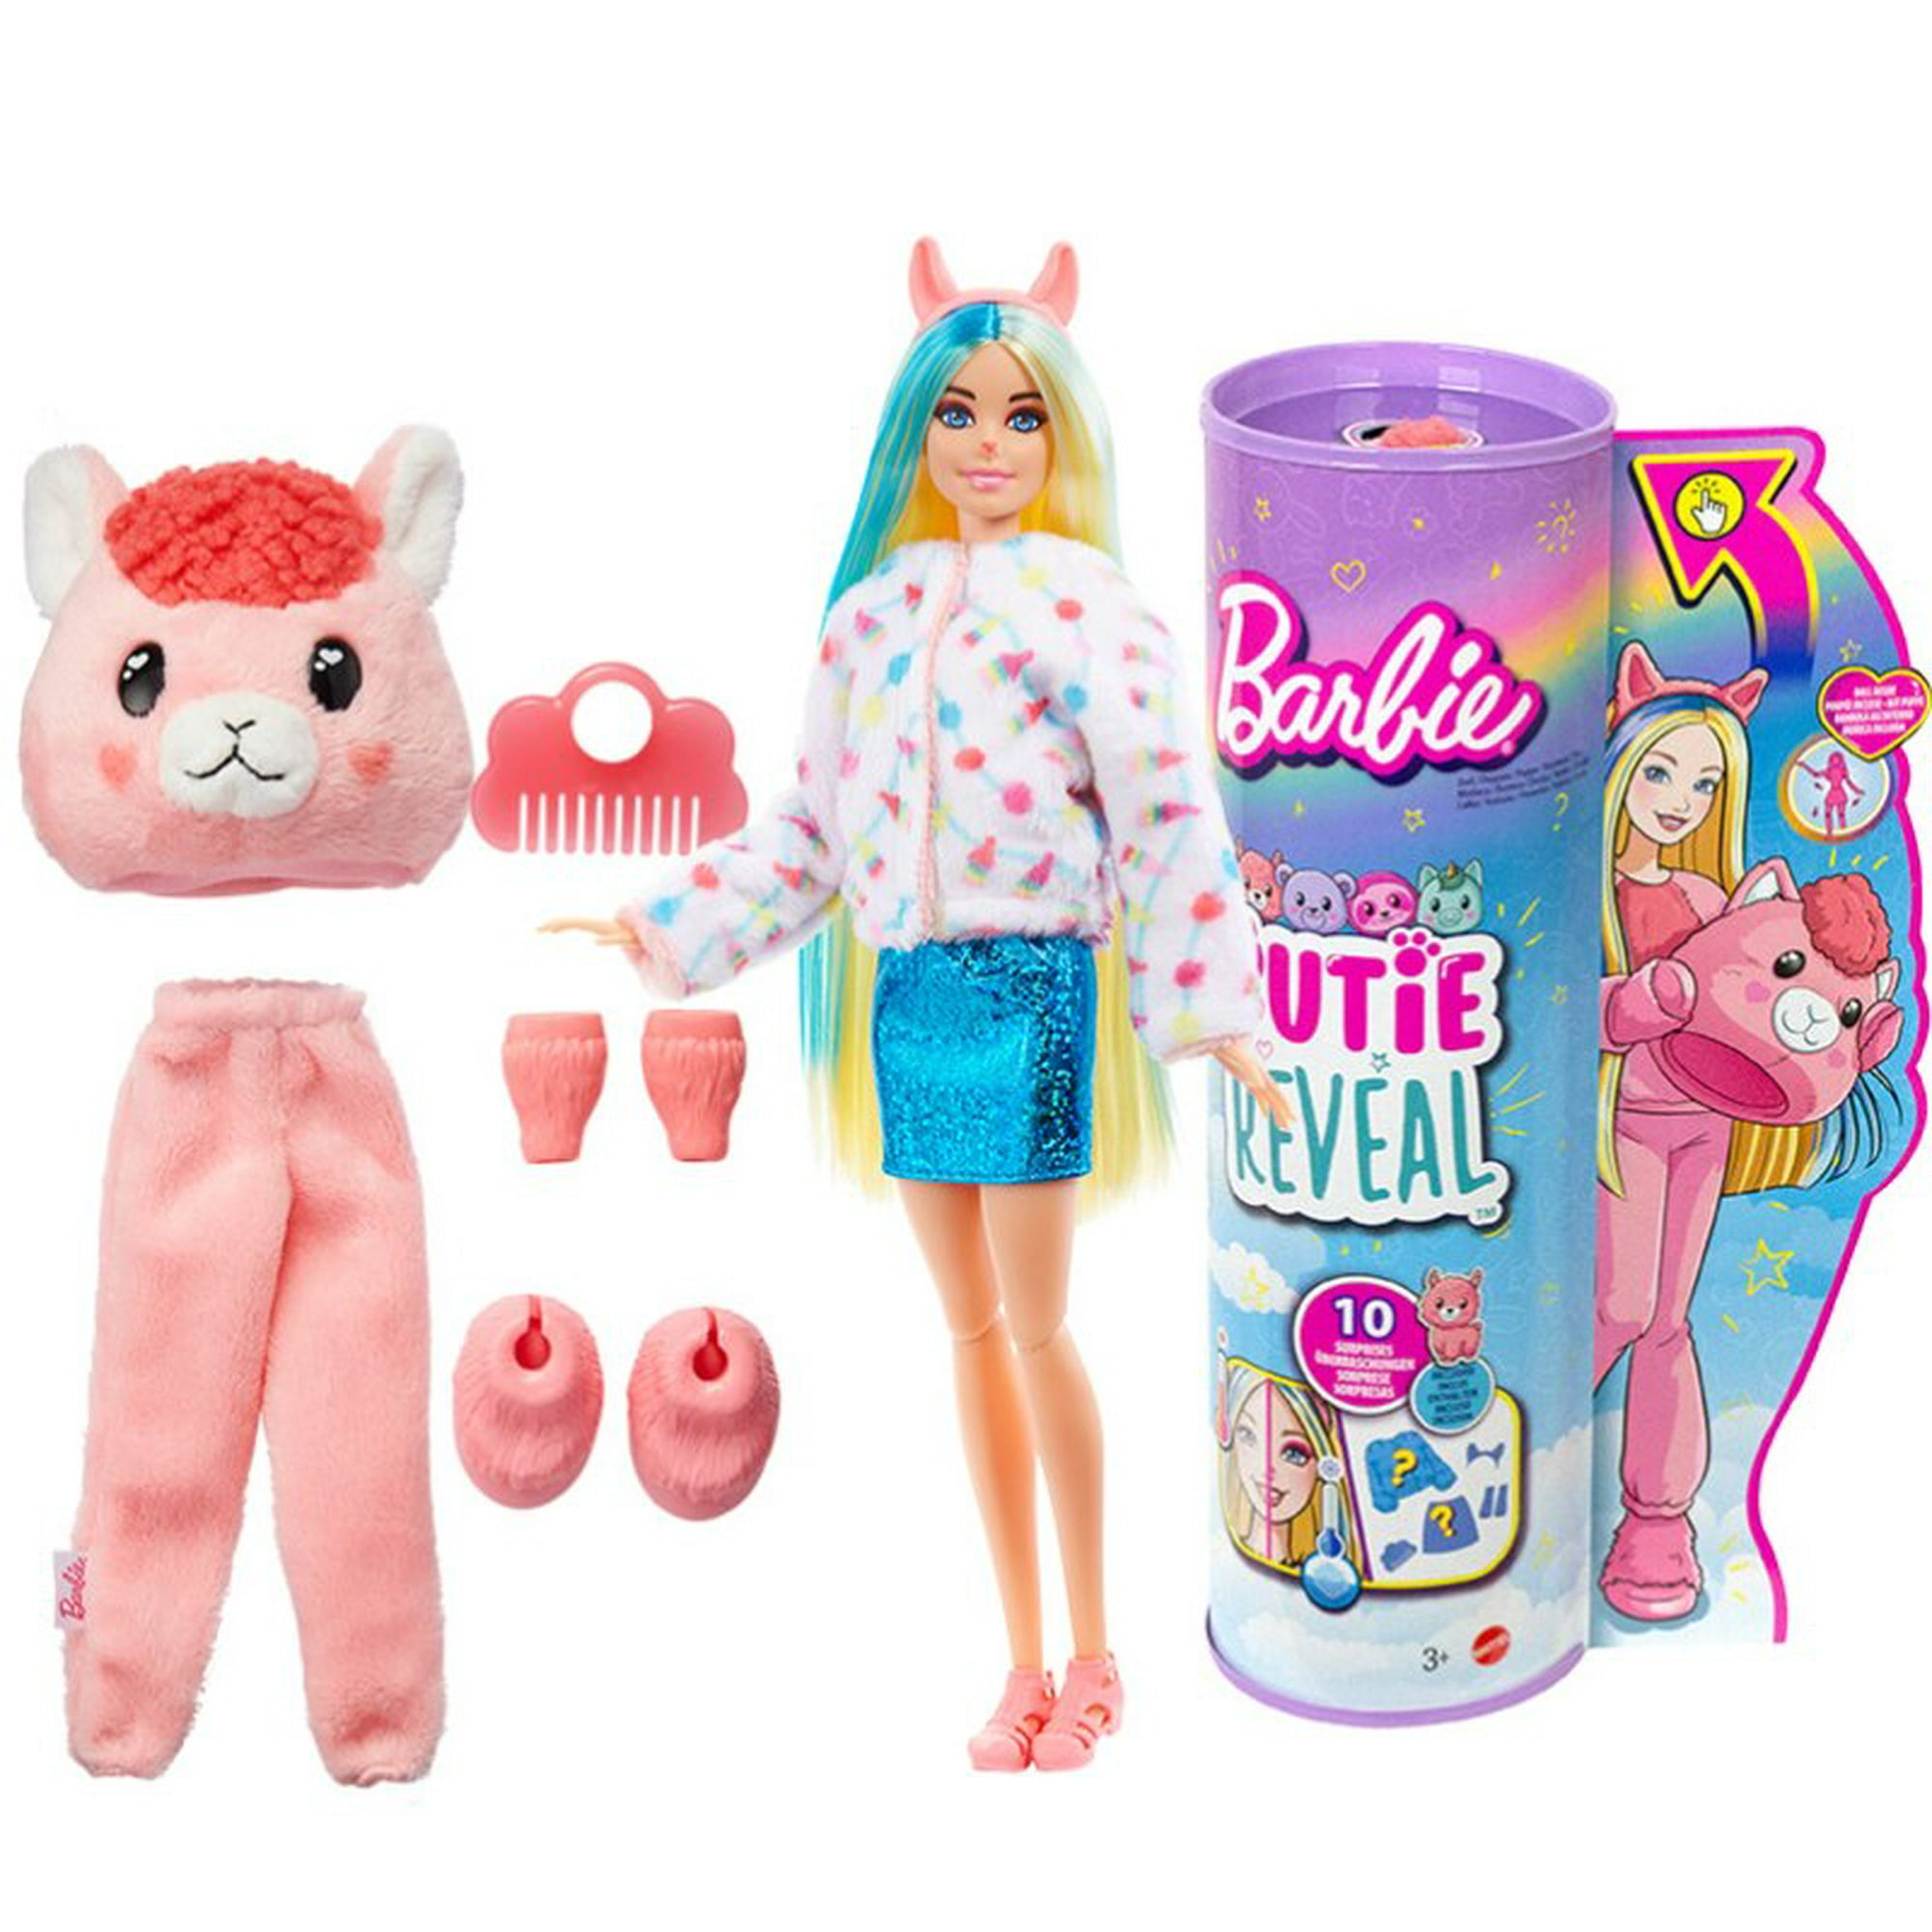 Juego de muñecas Barbie Cutie Reveal Fantasy Series con 10 sorpresas  incluyendo